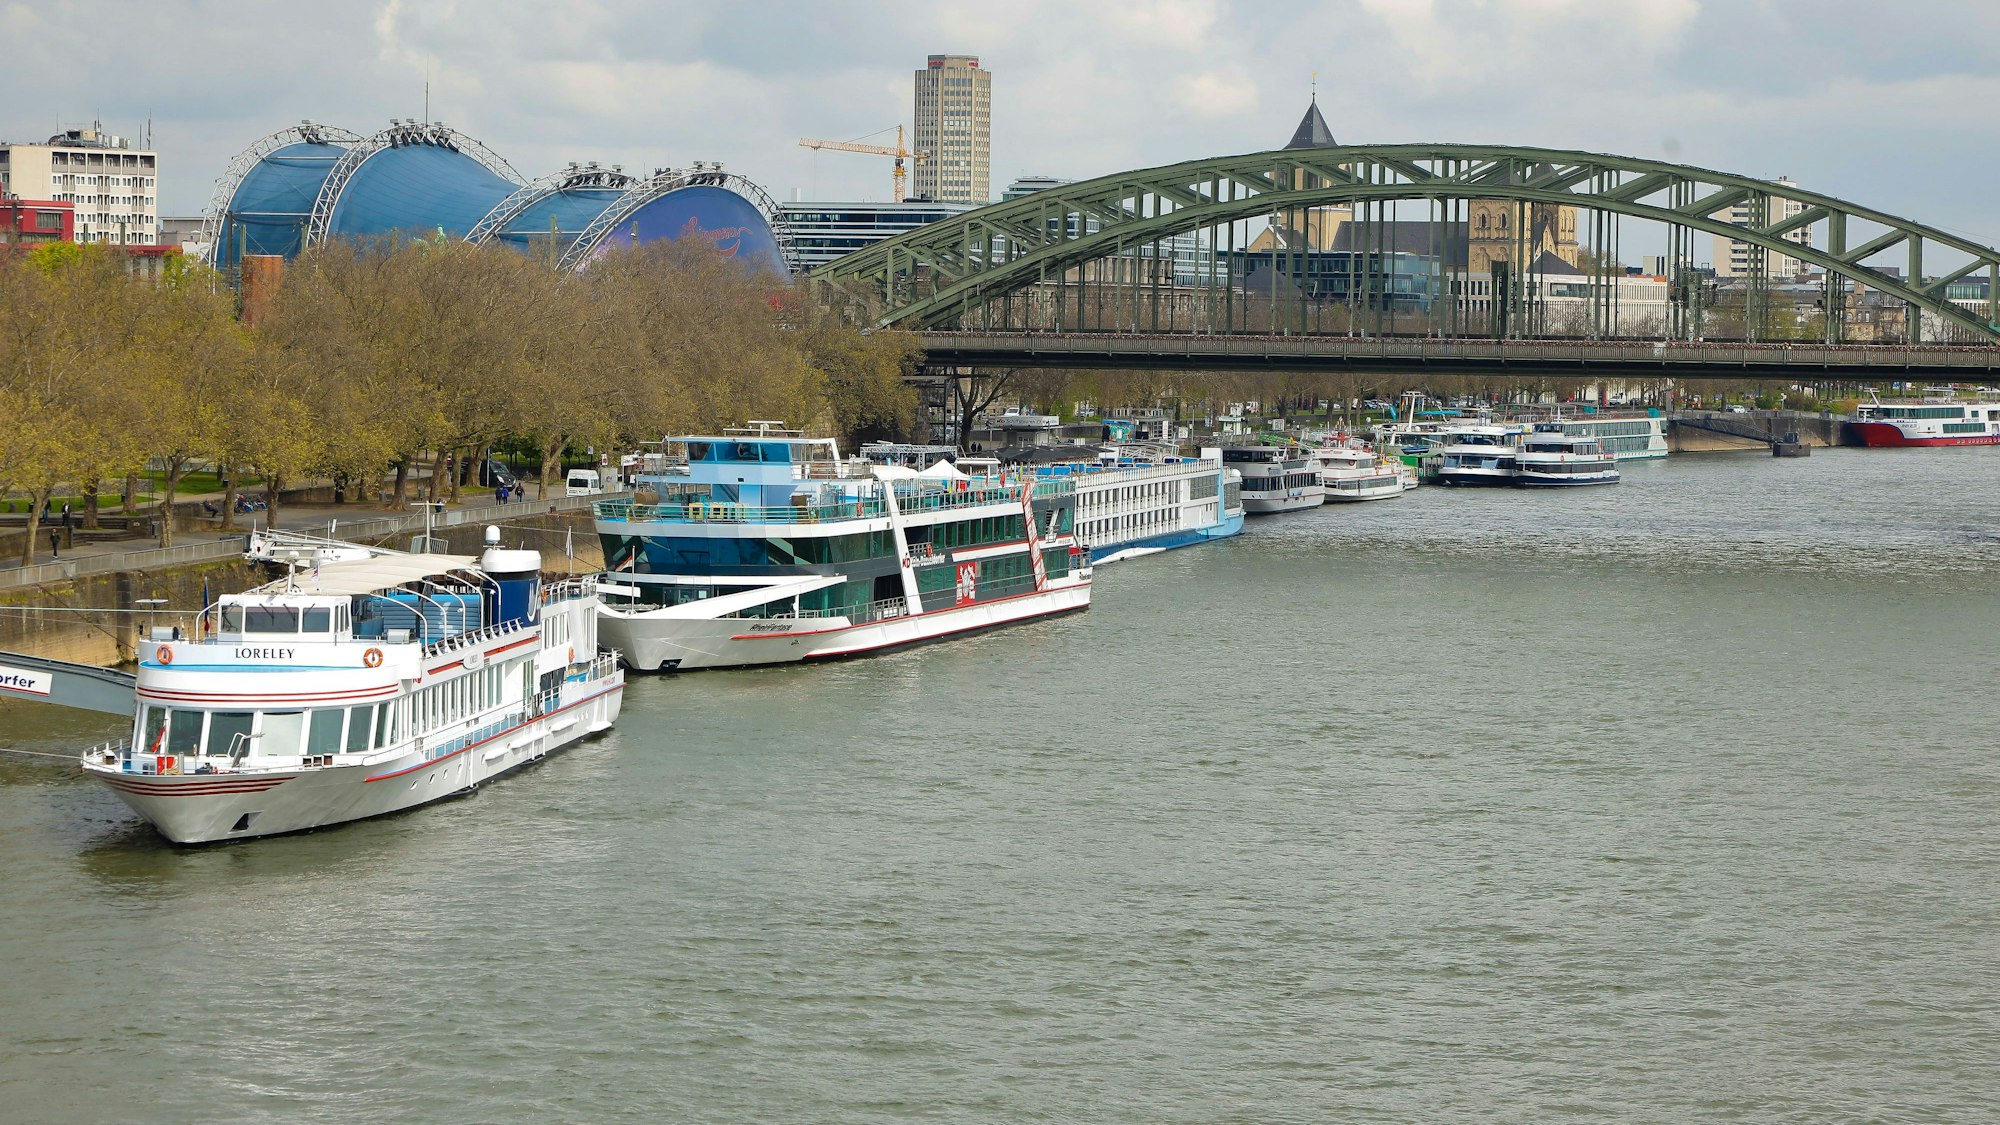 Touristenschiffe auf dem Rhein.